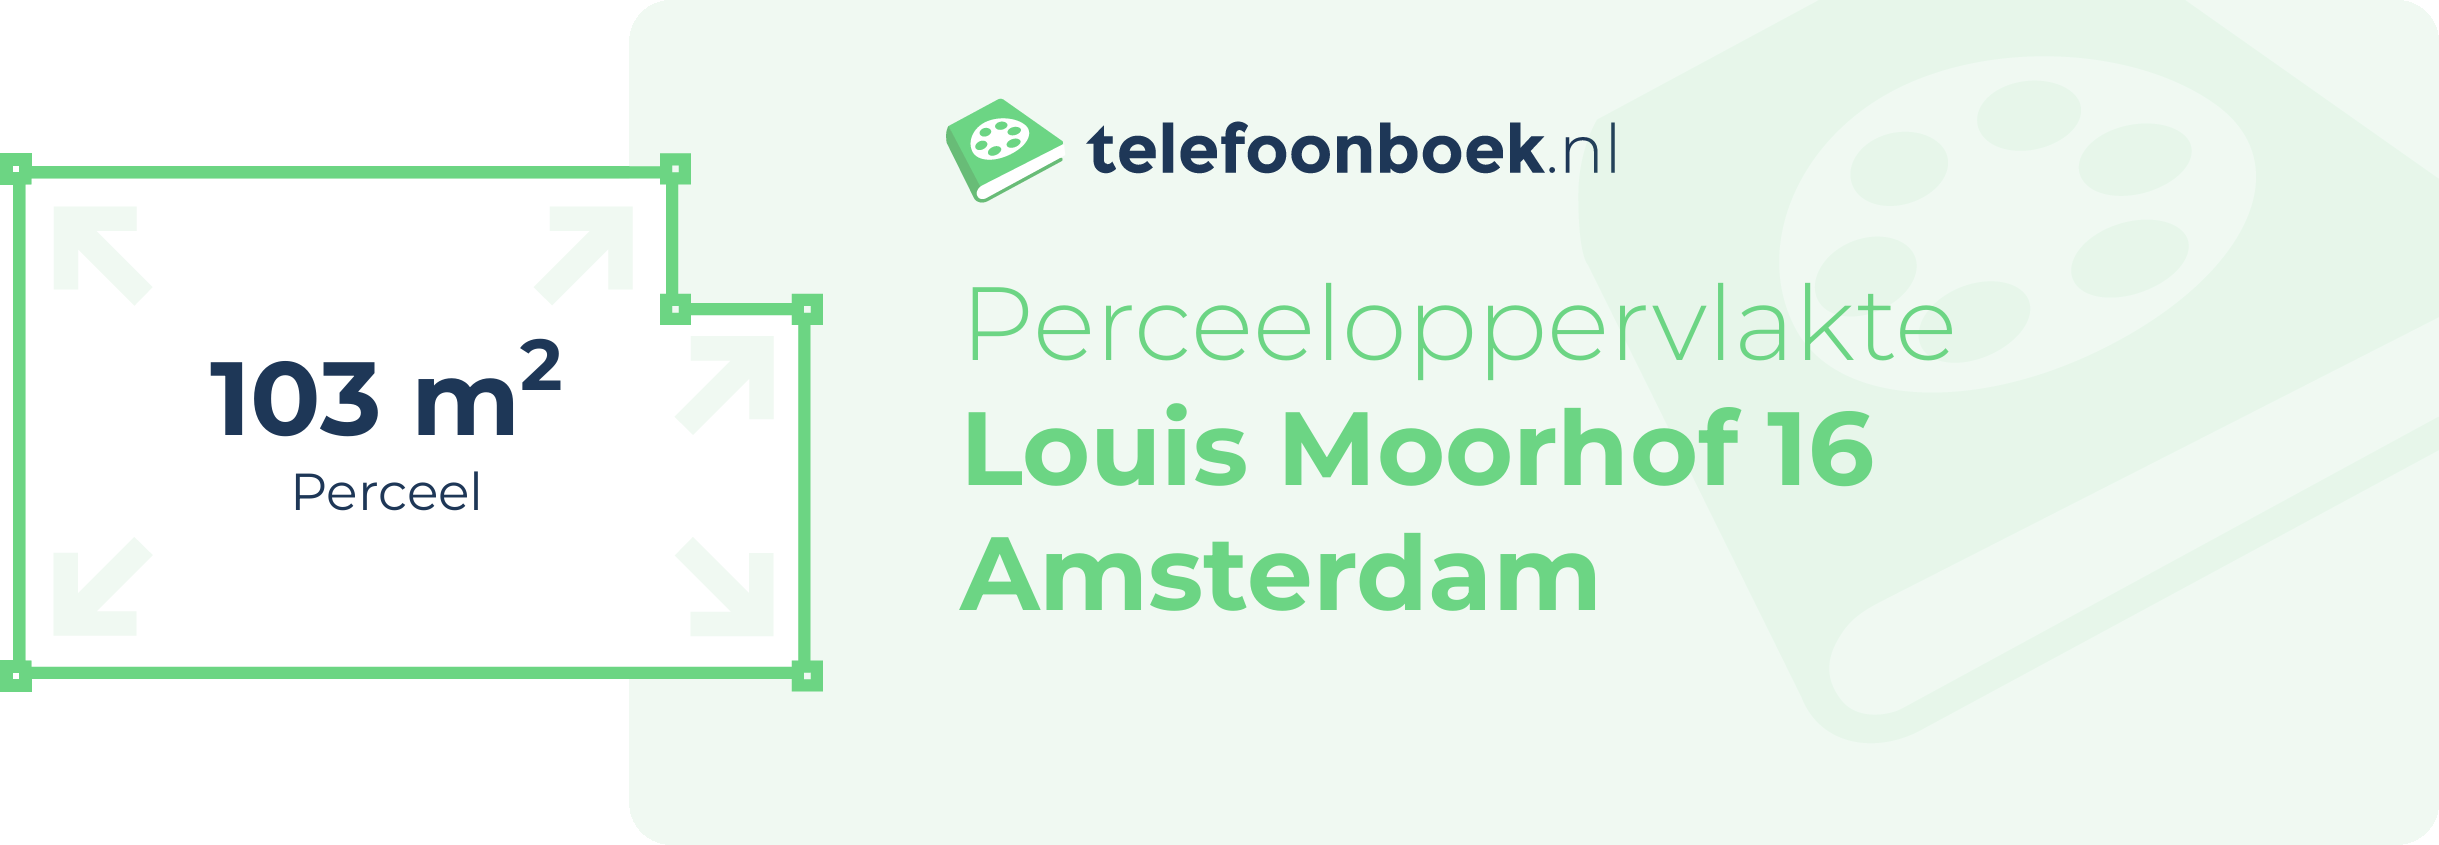 Perceeloppervlakte Louis Moorhof 16 Amsterdam